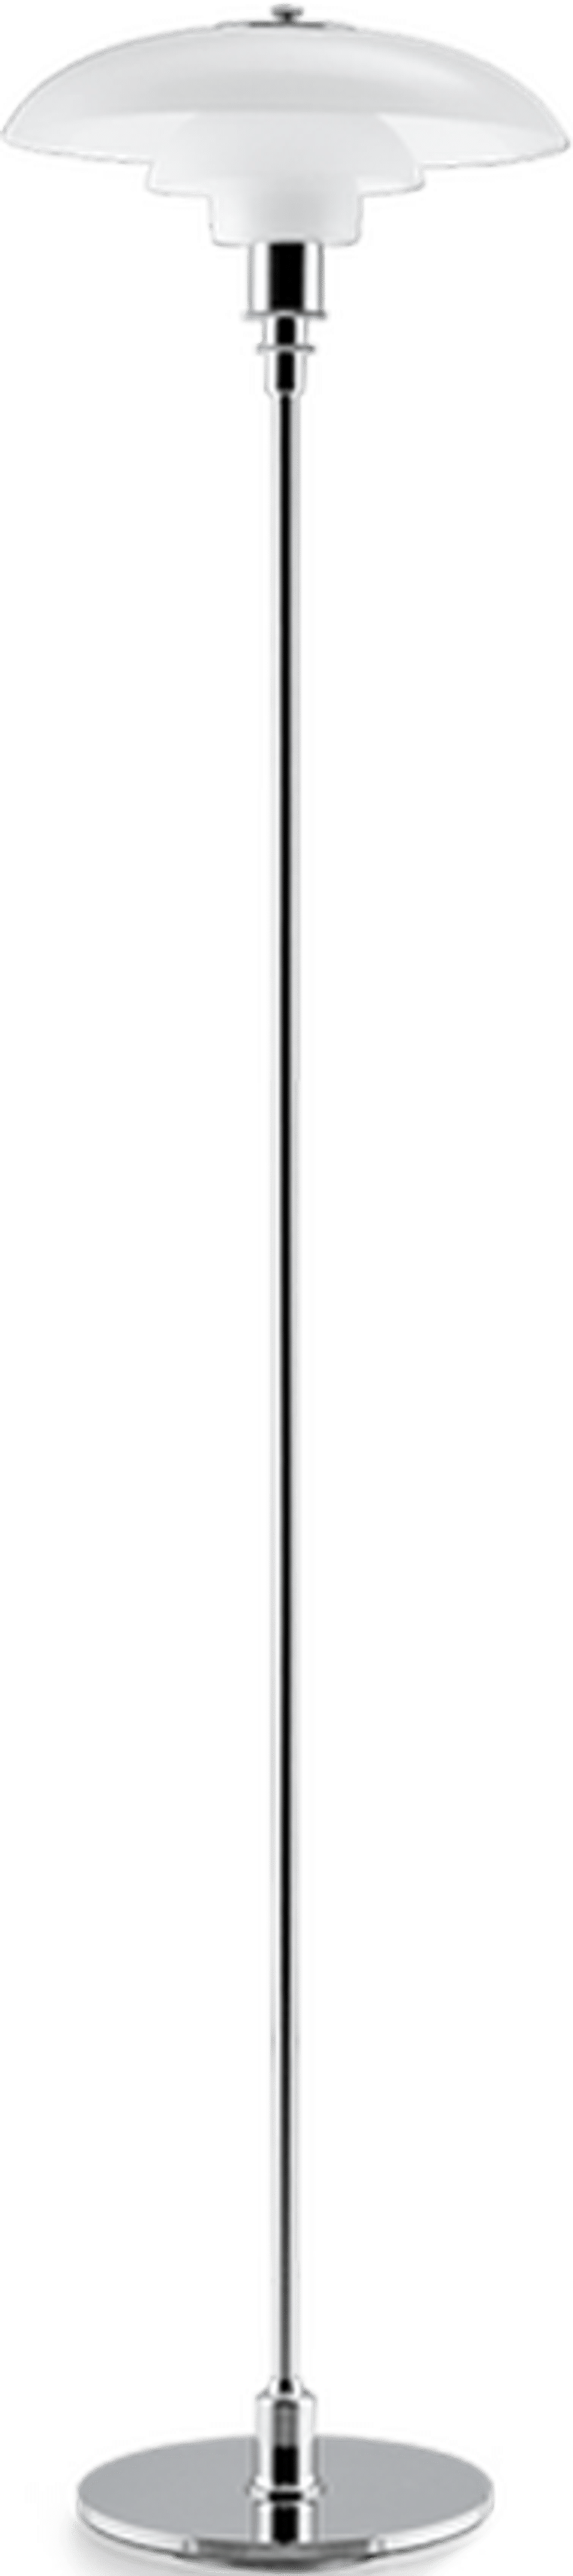 Lámpara de pie estilo PH 3.5/2.5 Chrome image.